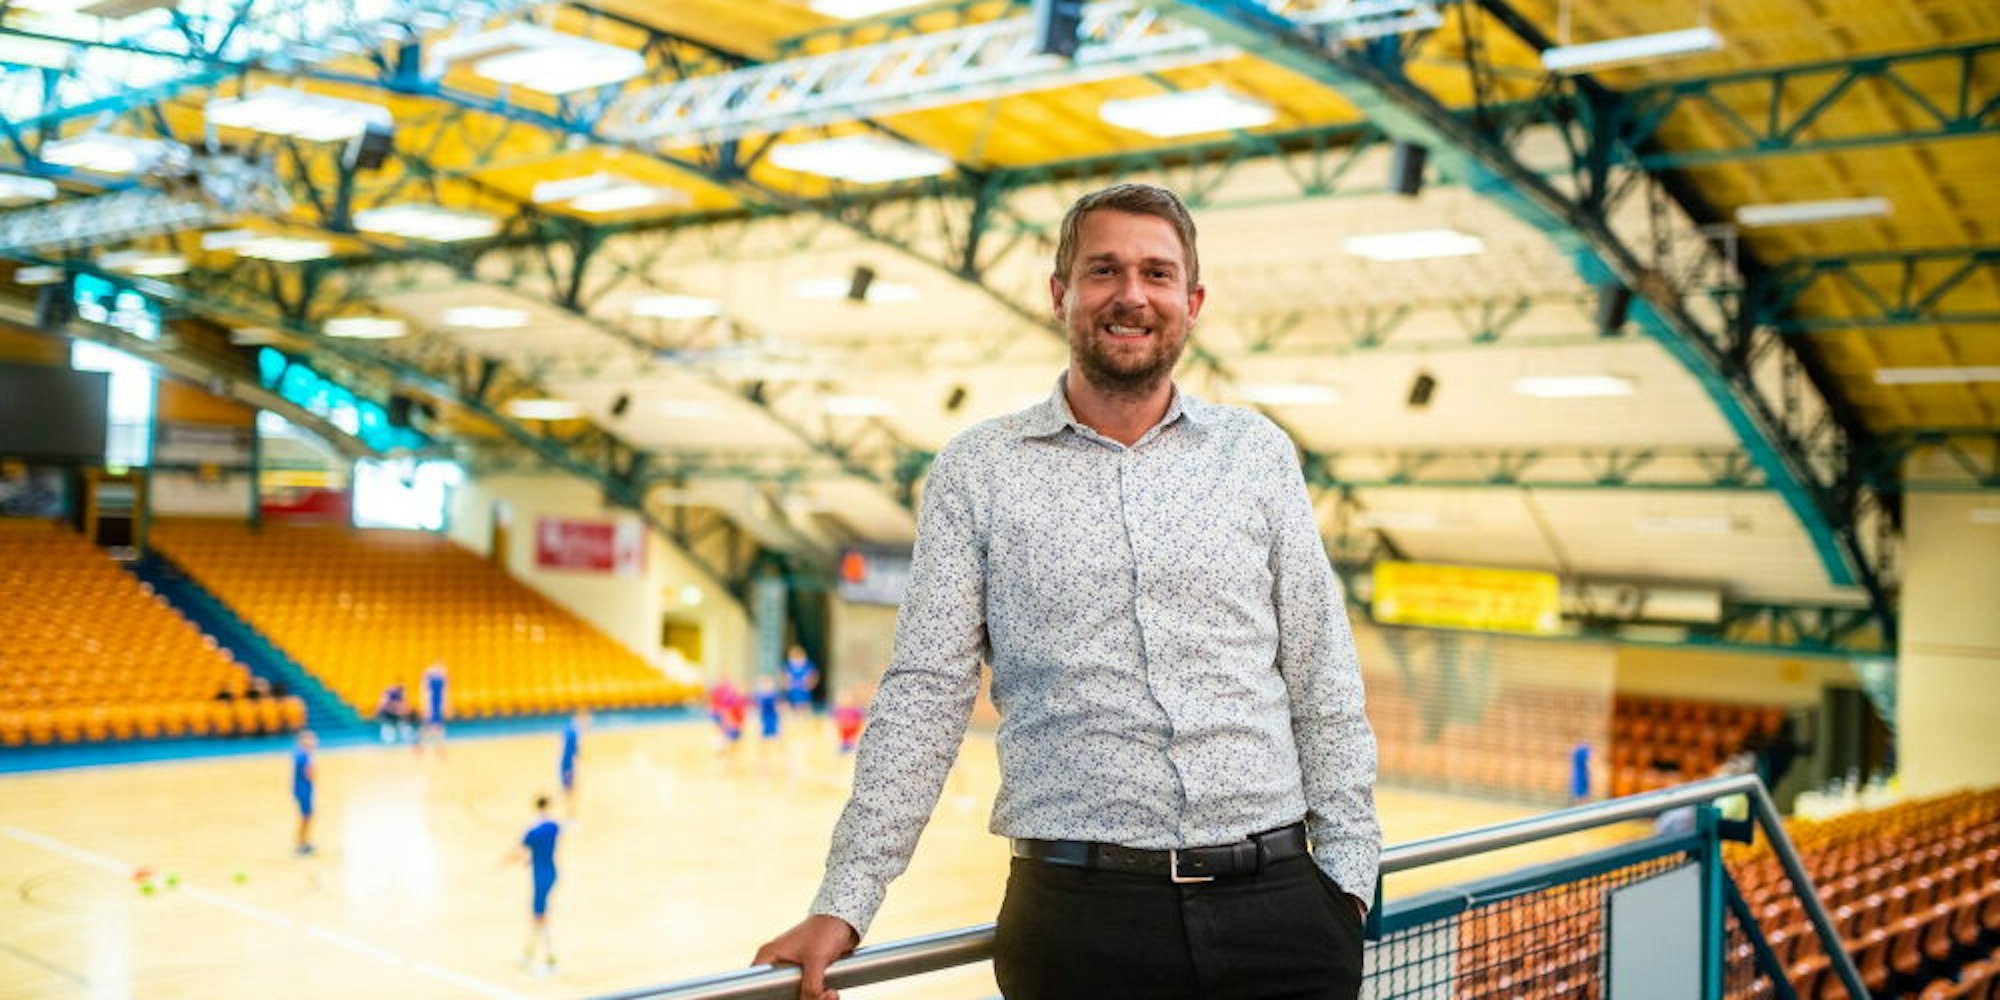 Die Rundsporthalle in Dessau sei eine Besonderheit, sagt der Gummersbacher Sebastian Glock über seinen Arbeitsplatz.